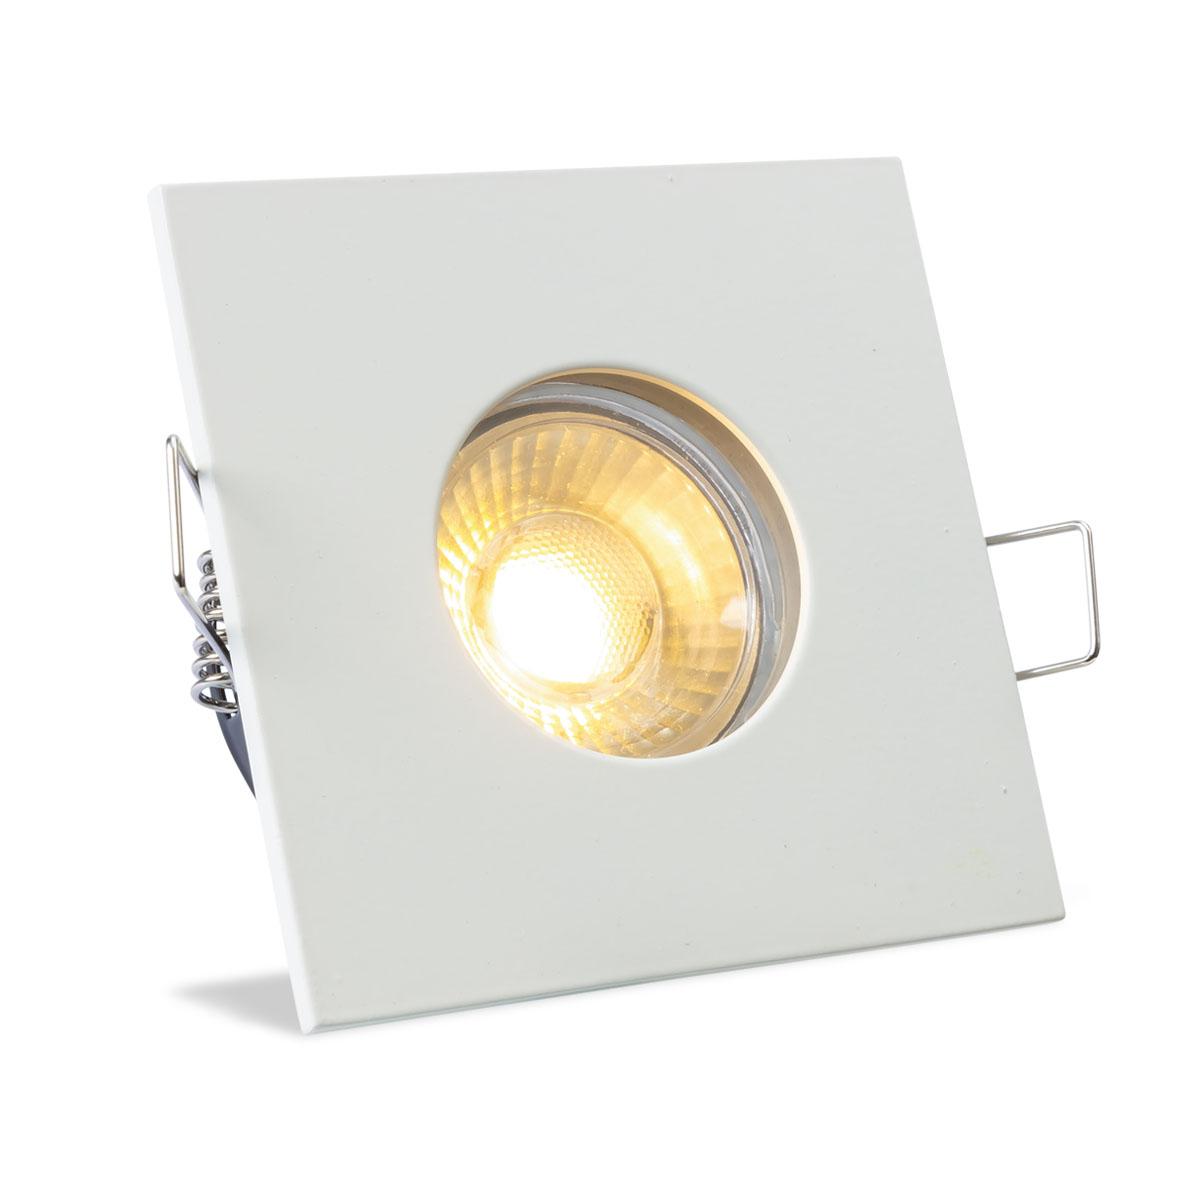 Einbauspot IP65 eckig - Abdeckring:  weiß - LED Leuchtmittel:  GU10 5W warmweiß dimmbar